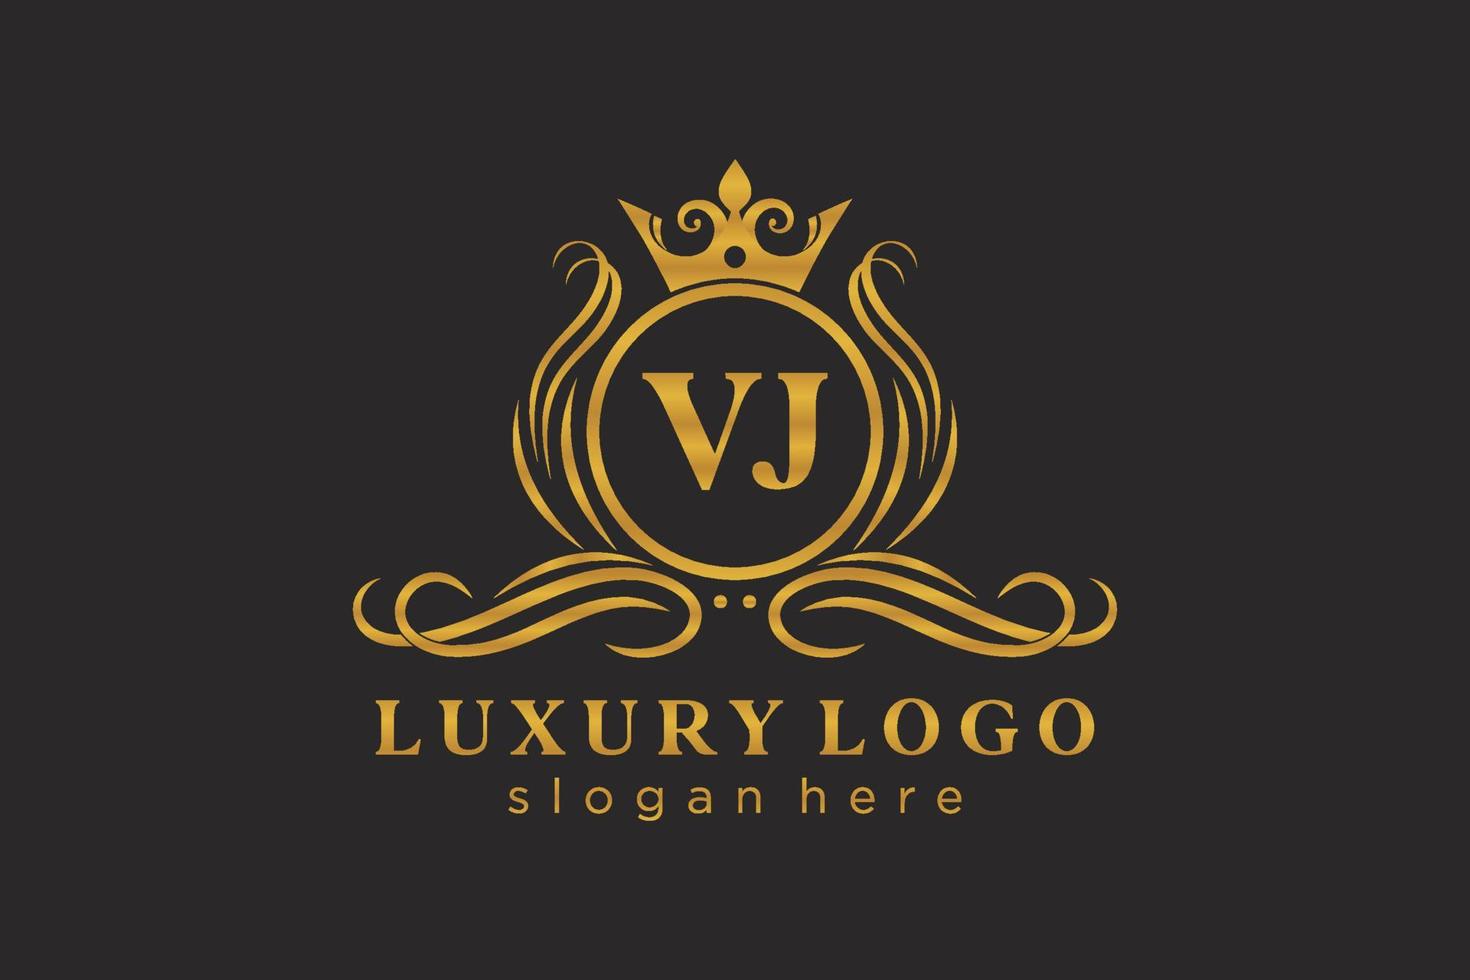 modèle initial de logo de luxe royal de lettre vj dans l'art vectoriel pour le restaurant, la royauté, la boutique, le café, l'hôtel, l'héraldique, les bijoux, la mode et d'autres illustrations vectorielles.